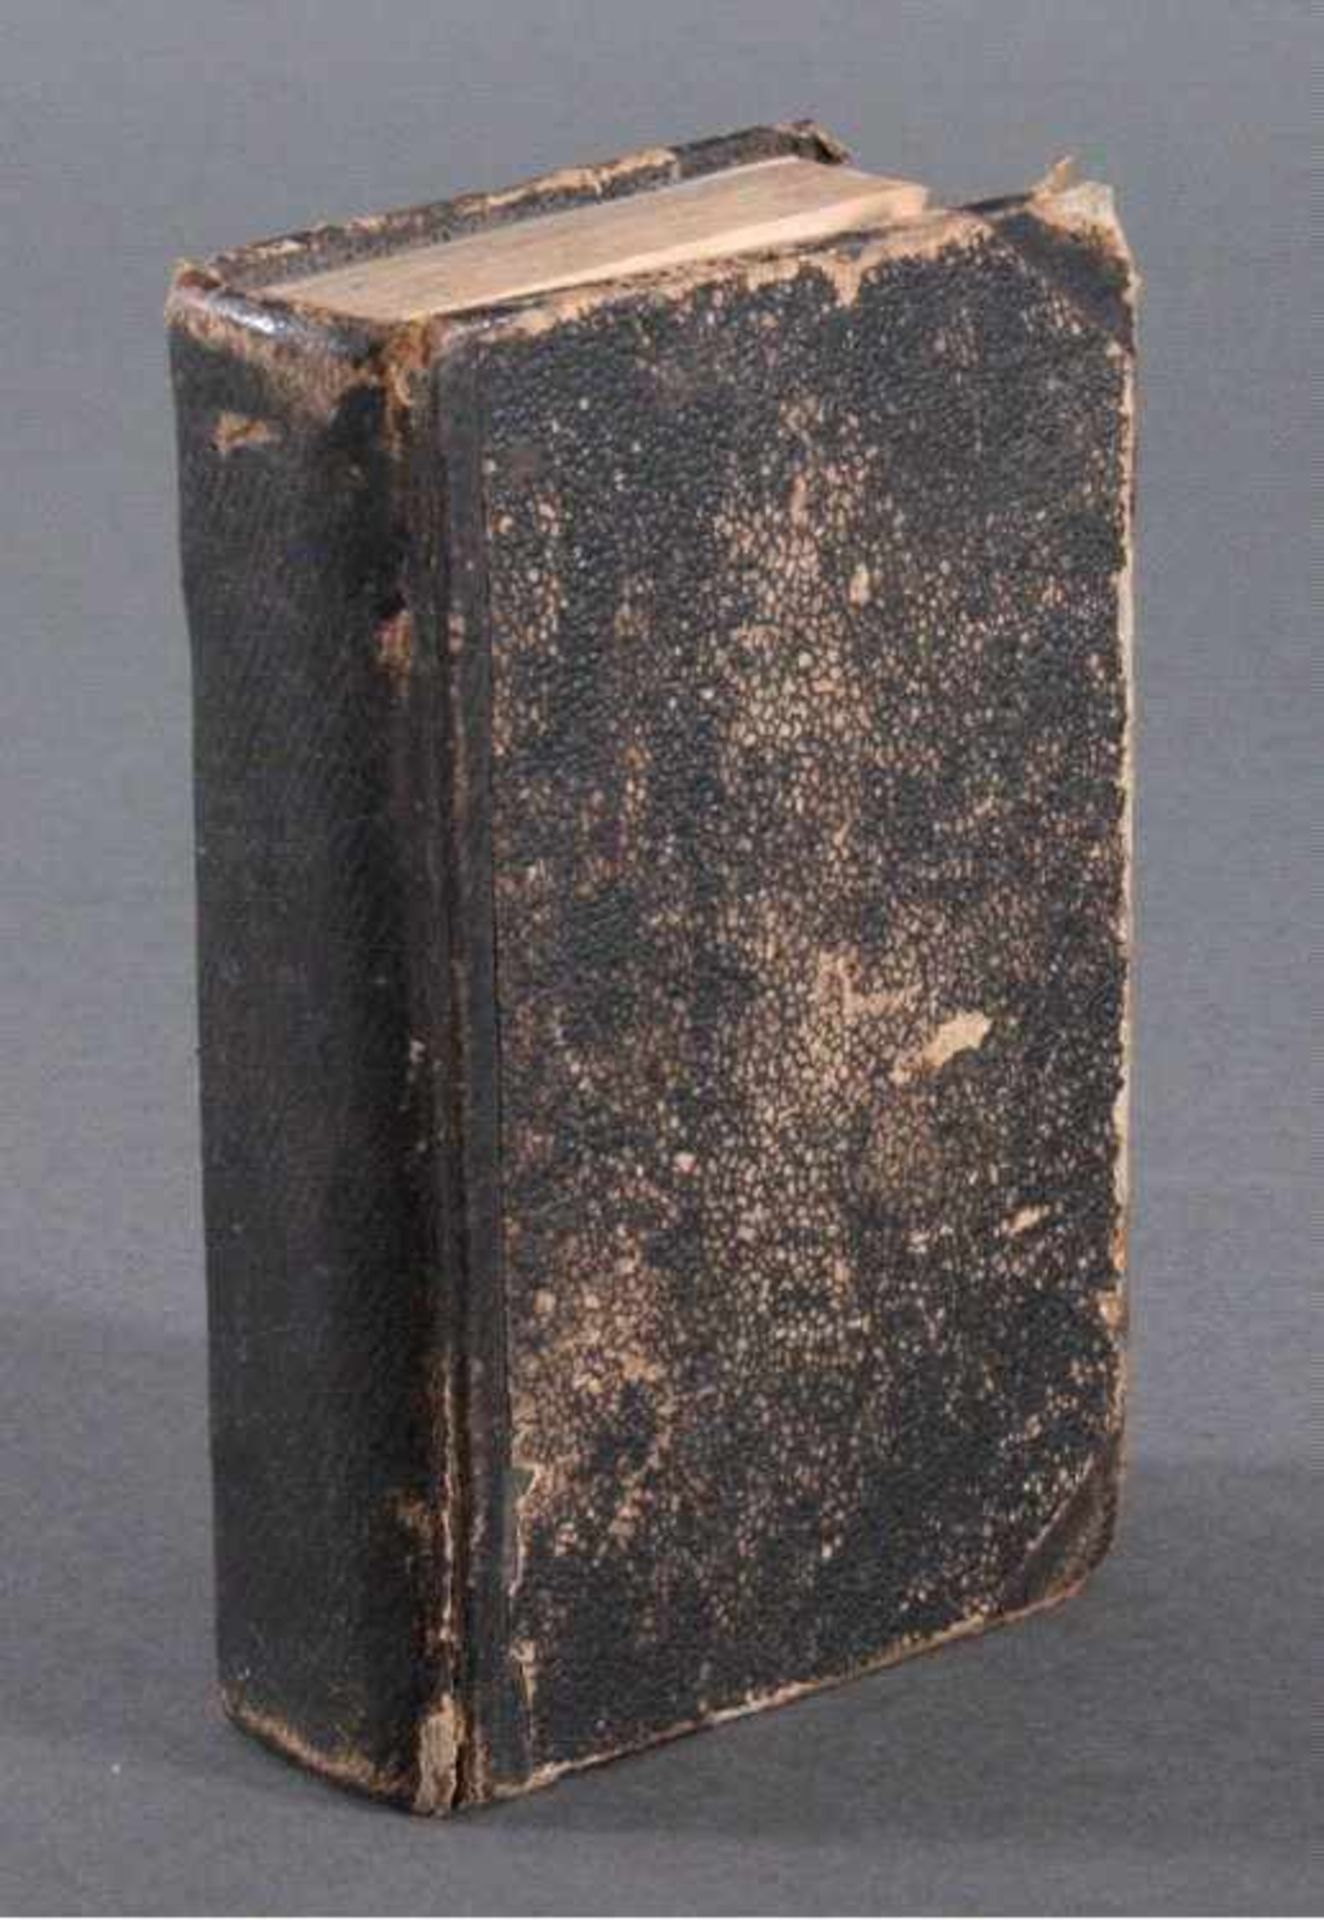 Sammlung der vorzüglichsten Gebete, 1833für katholische Christen, Kupfer-gestochenes Büchlein,